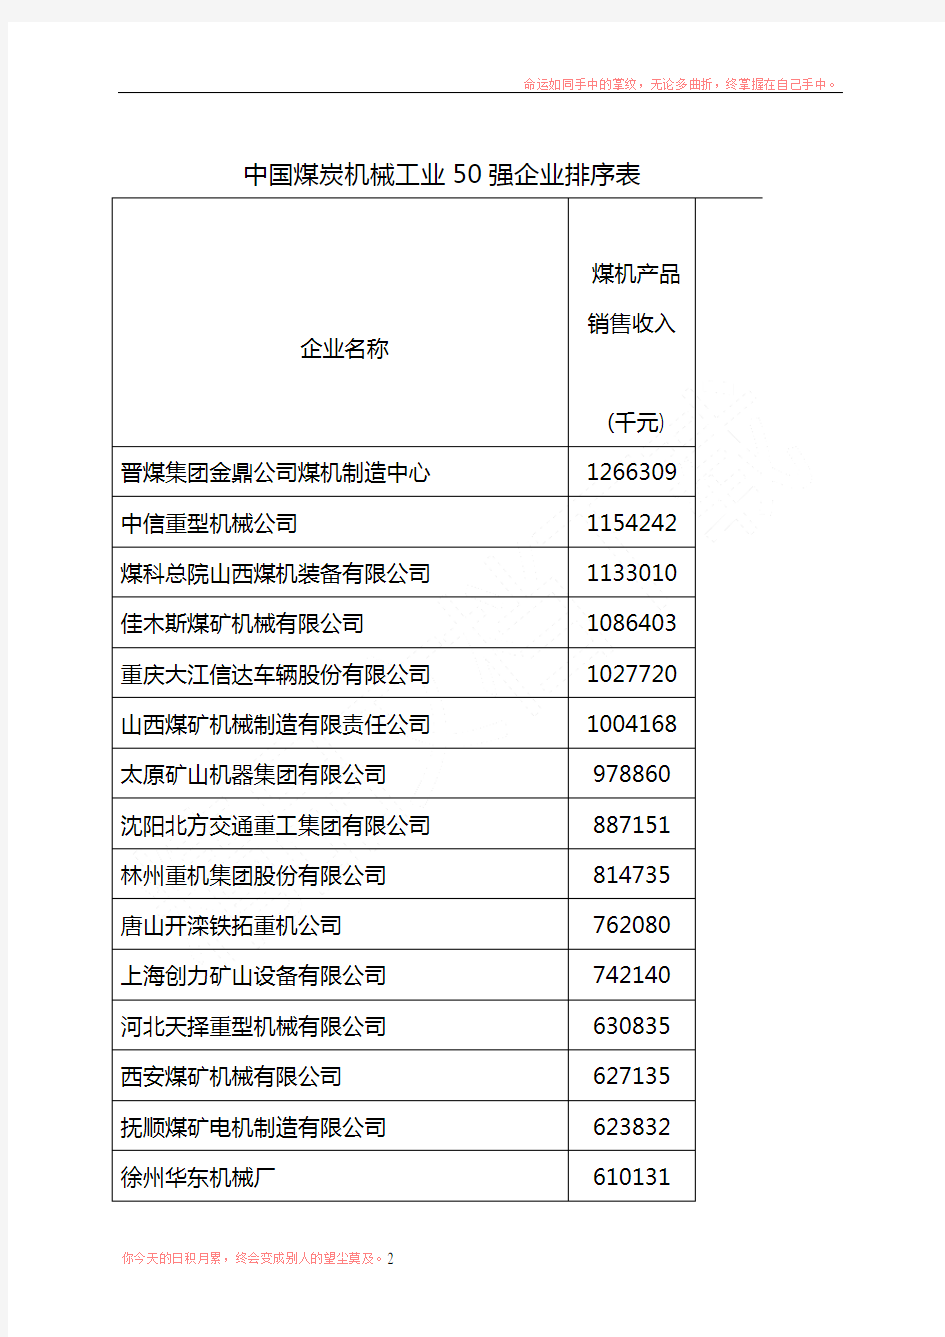 中国煤炭机械工业50强企业排序表